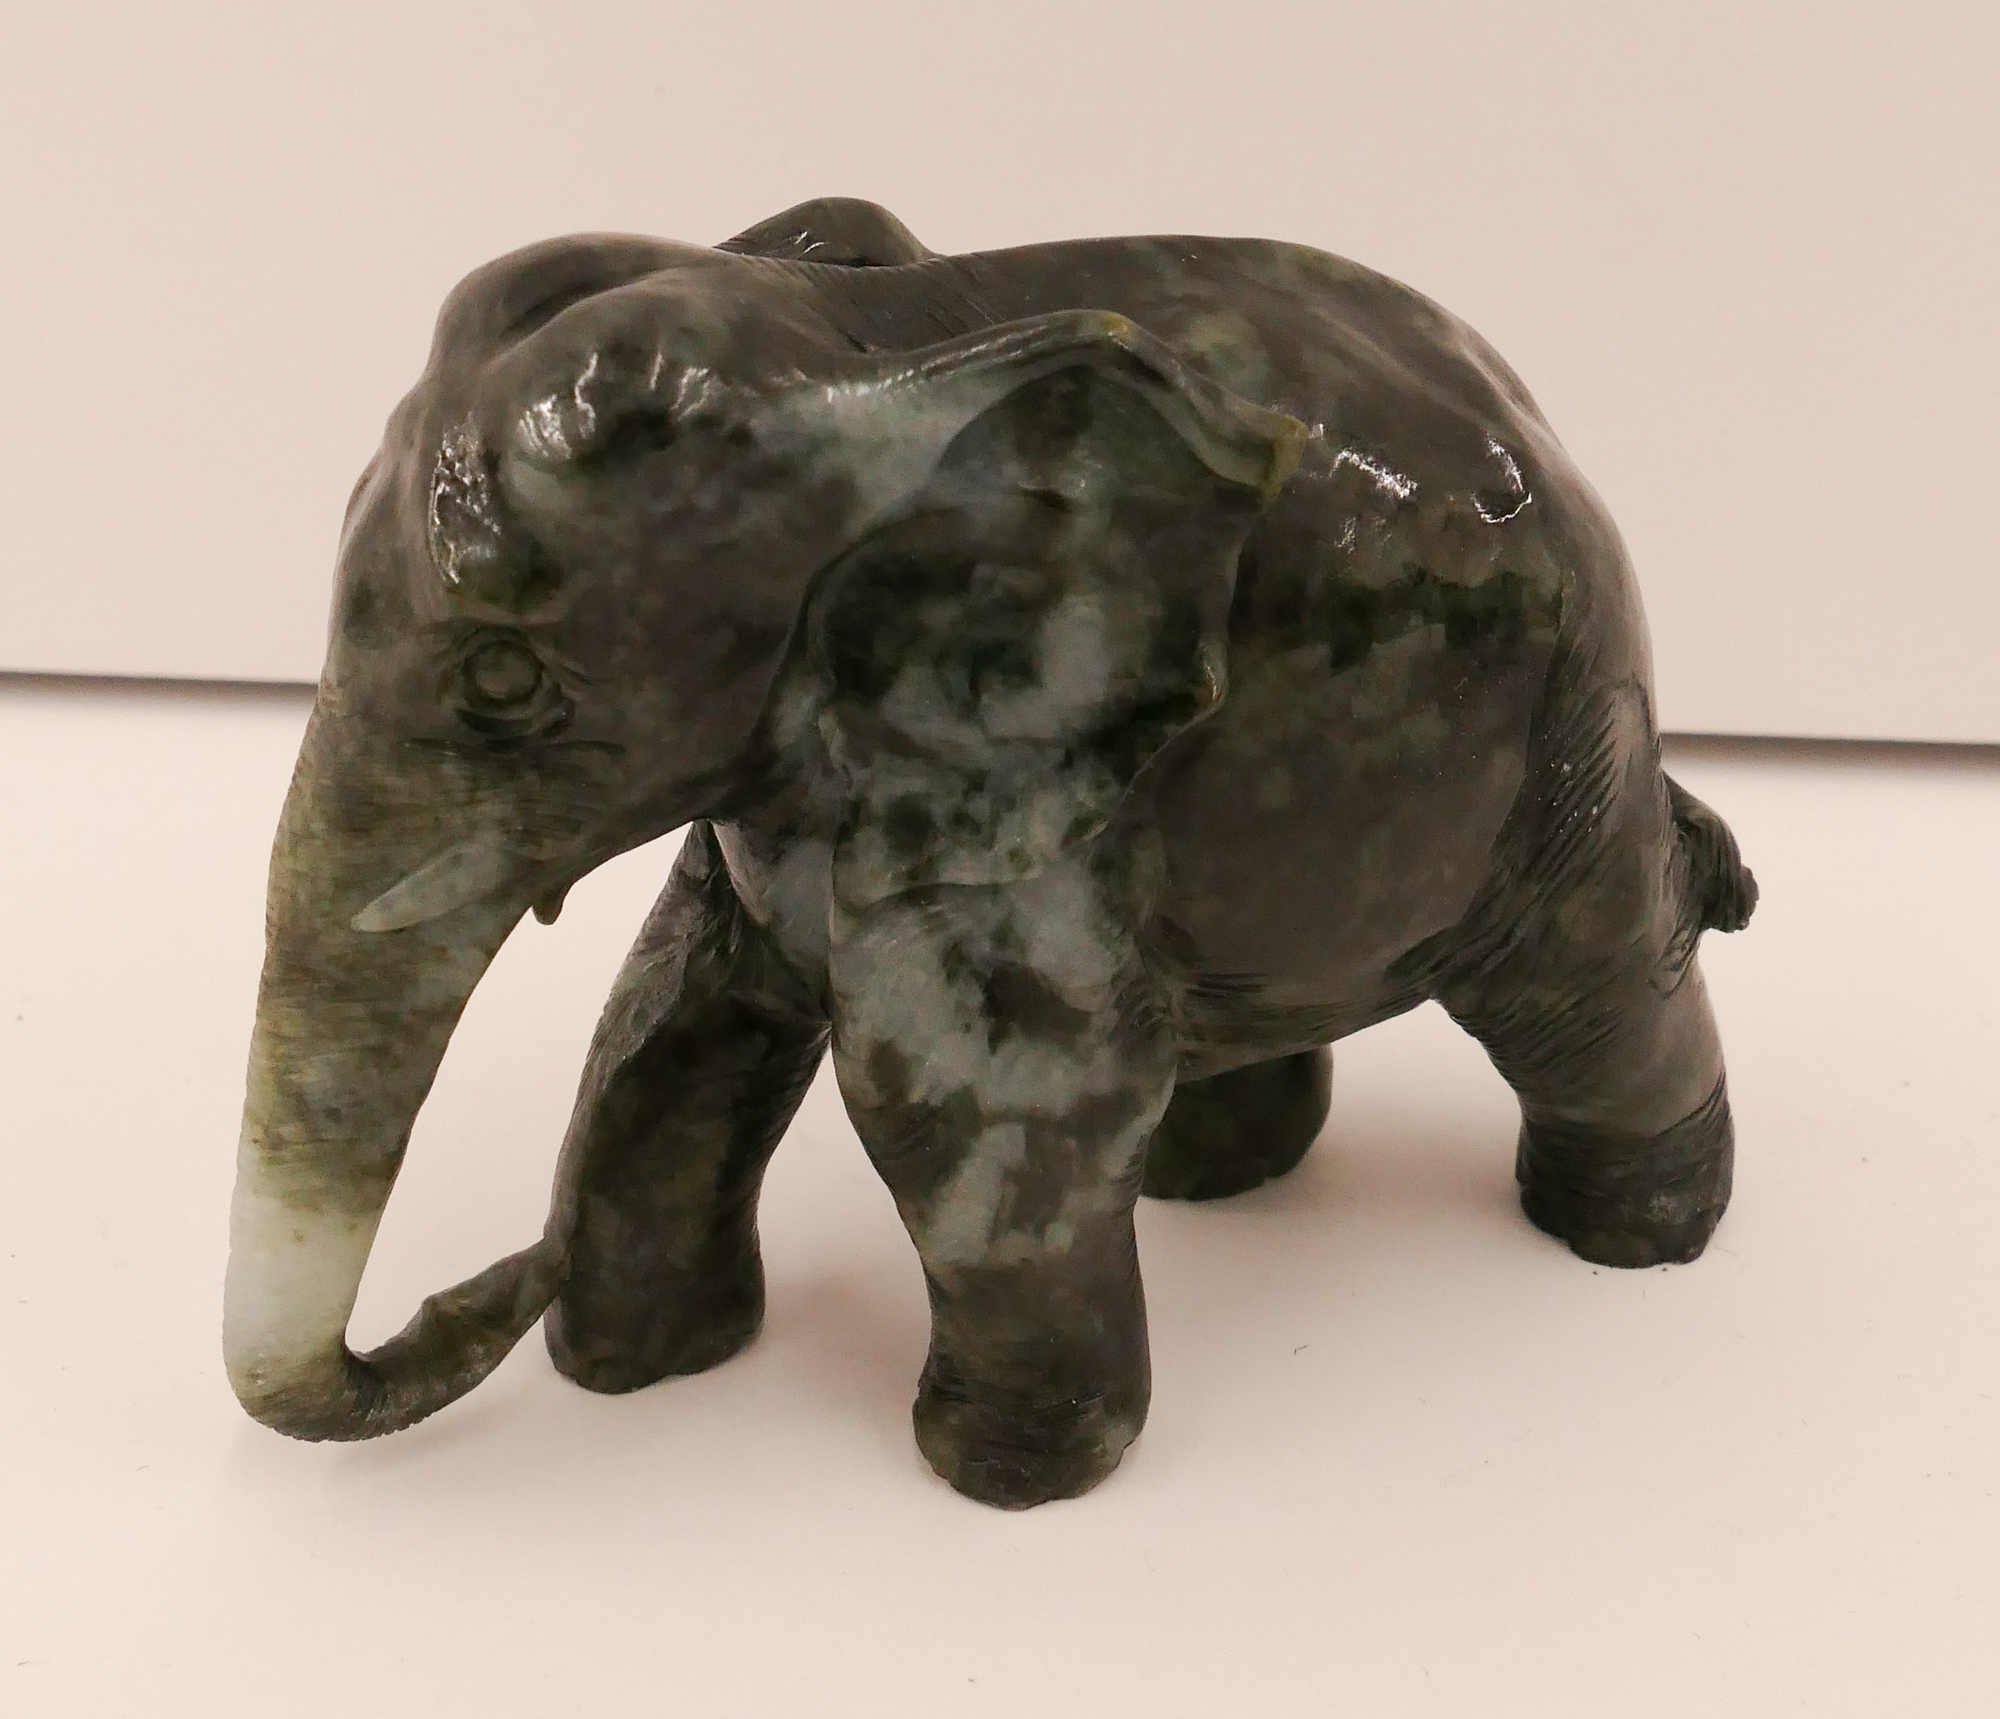 Carved Jade Elephant Figure- 3x4